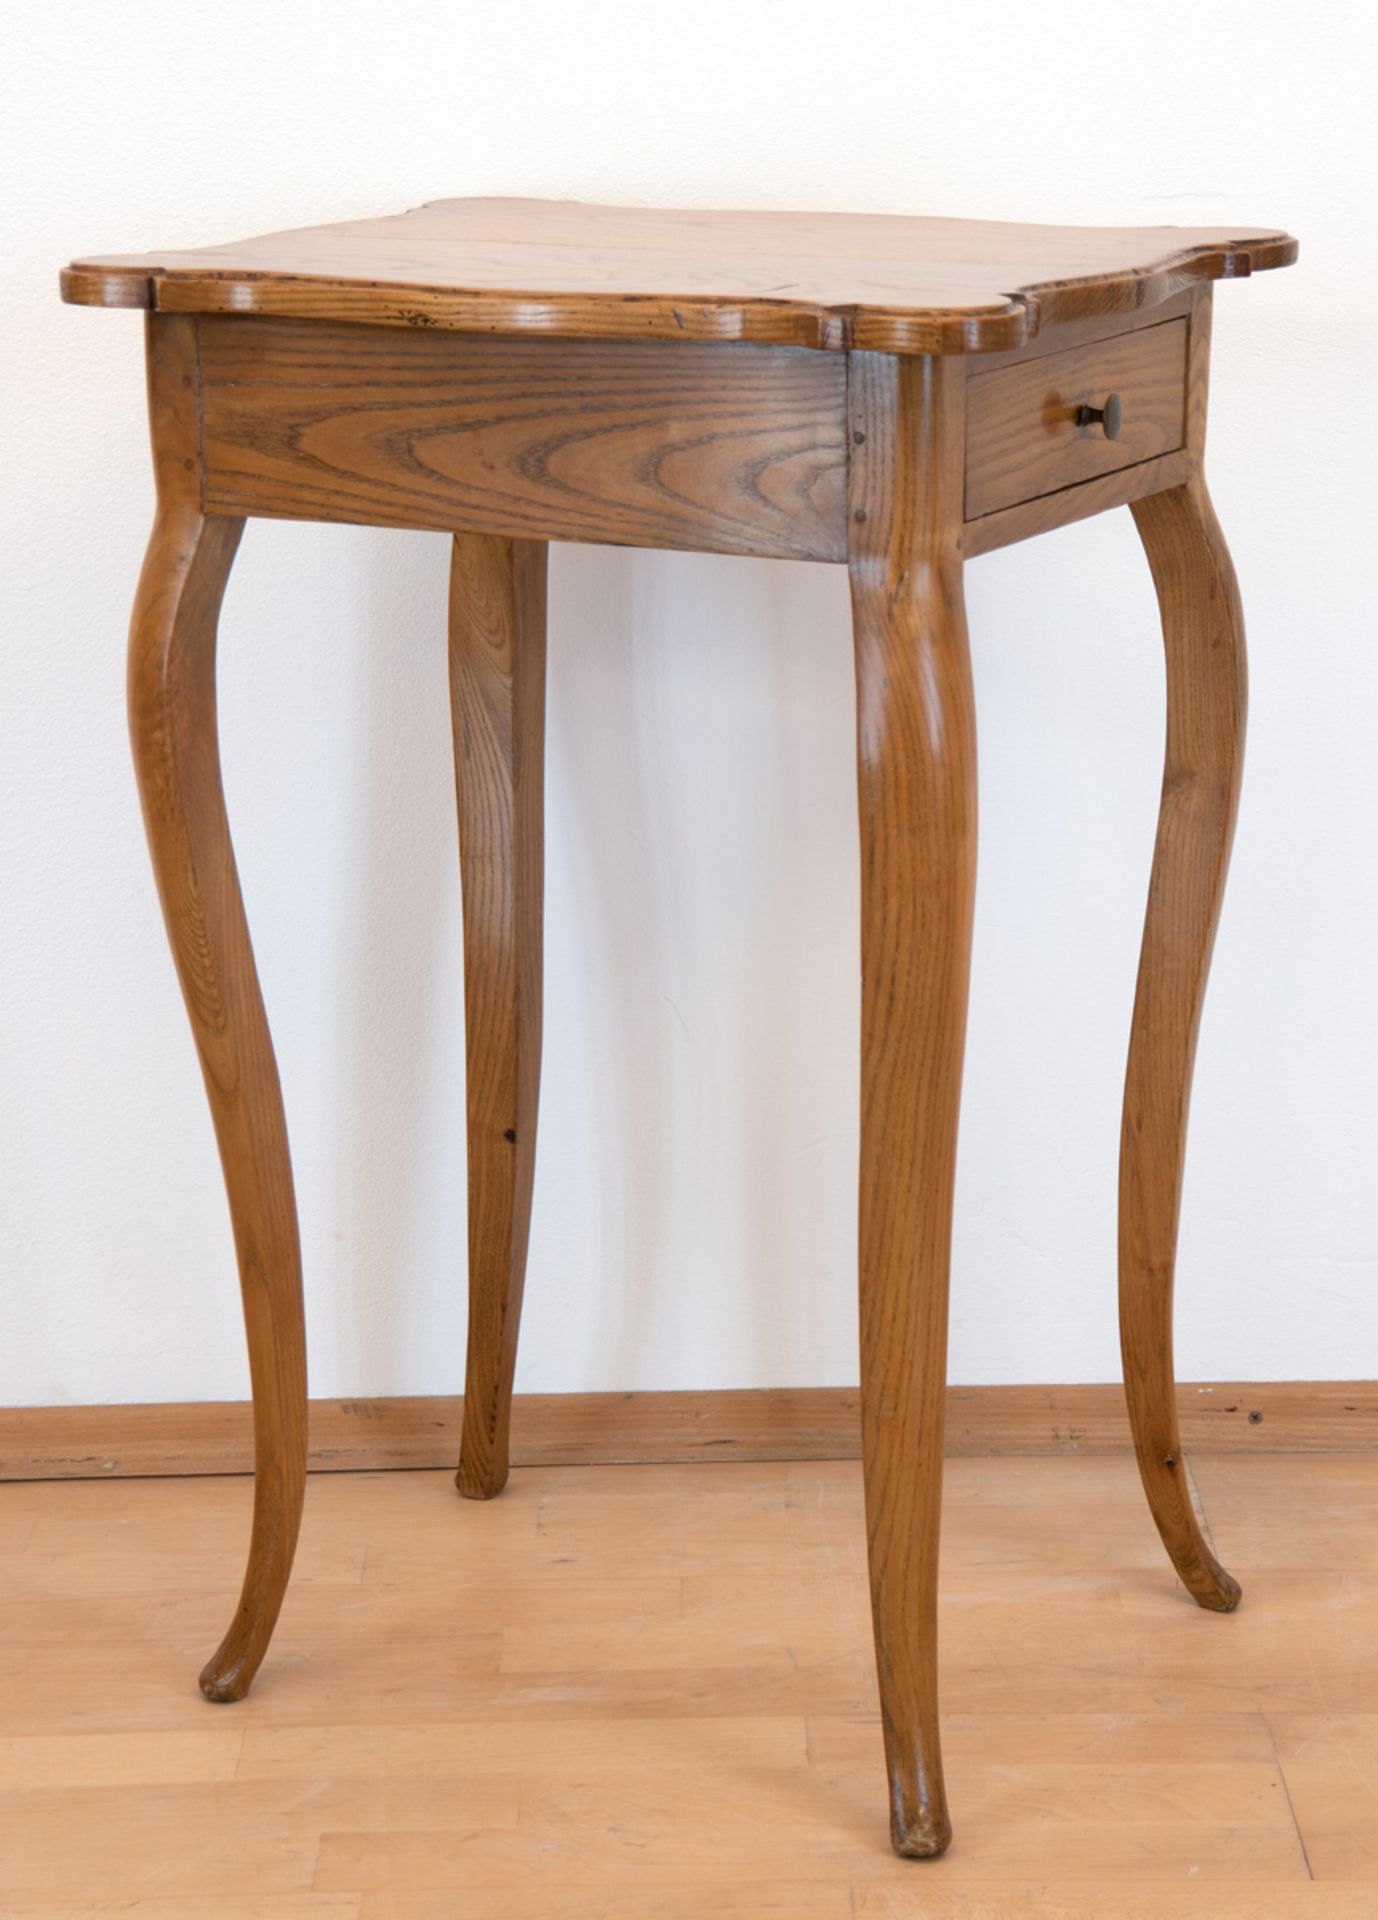 Tischchen im Barockstil, 19. Jh., Esche, über geschwungenen Beinen 1-schübige Zarge mit4-seitig